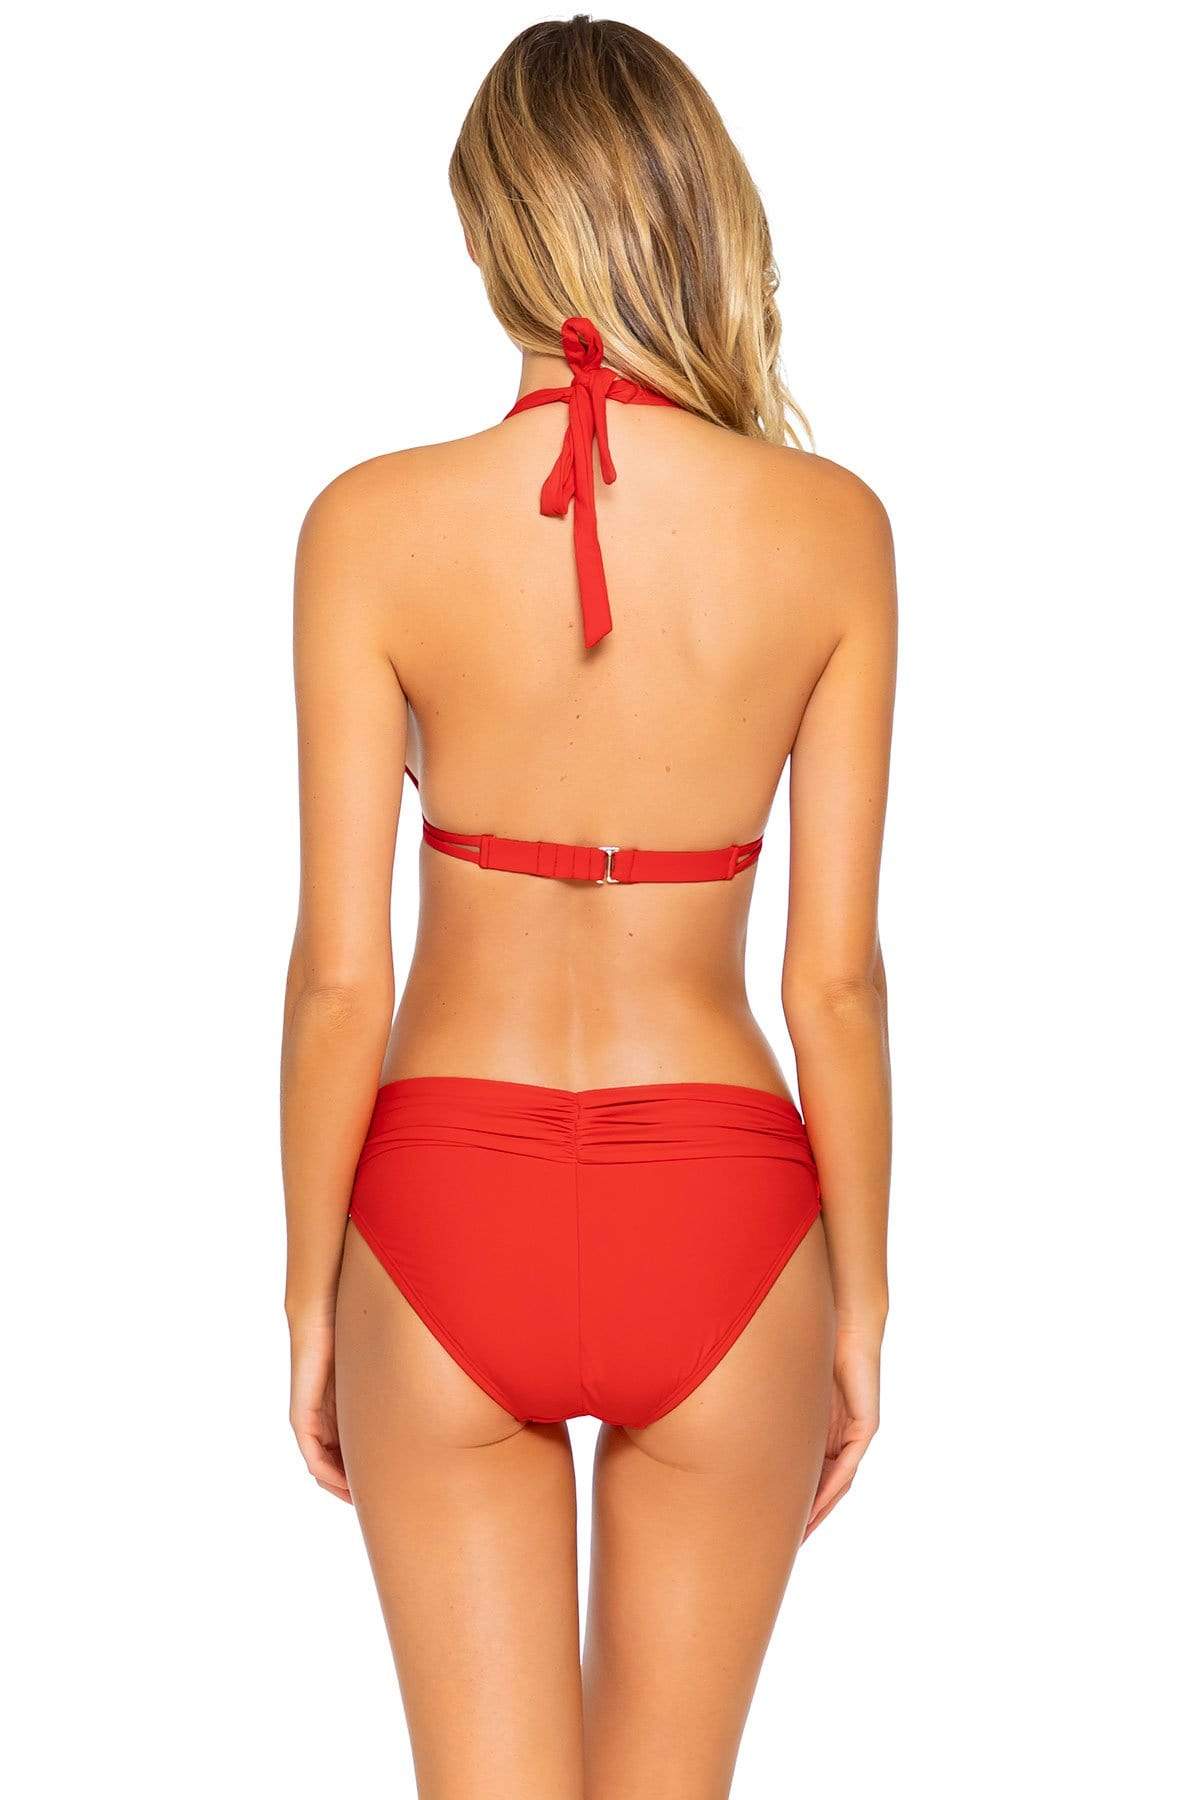 Bestswimwear -  Sunsets Scarlet Unforgettable Bottom